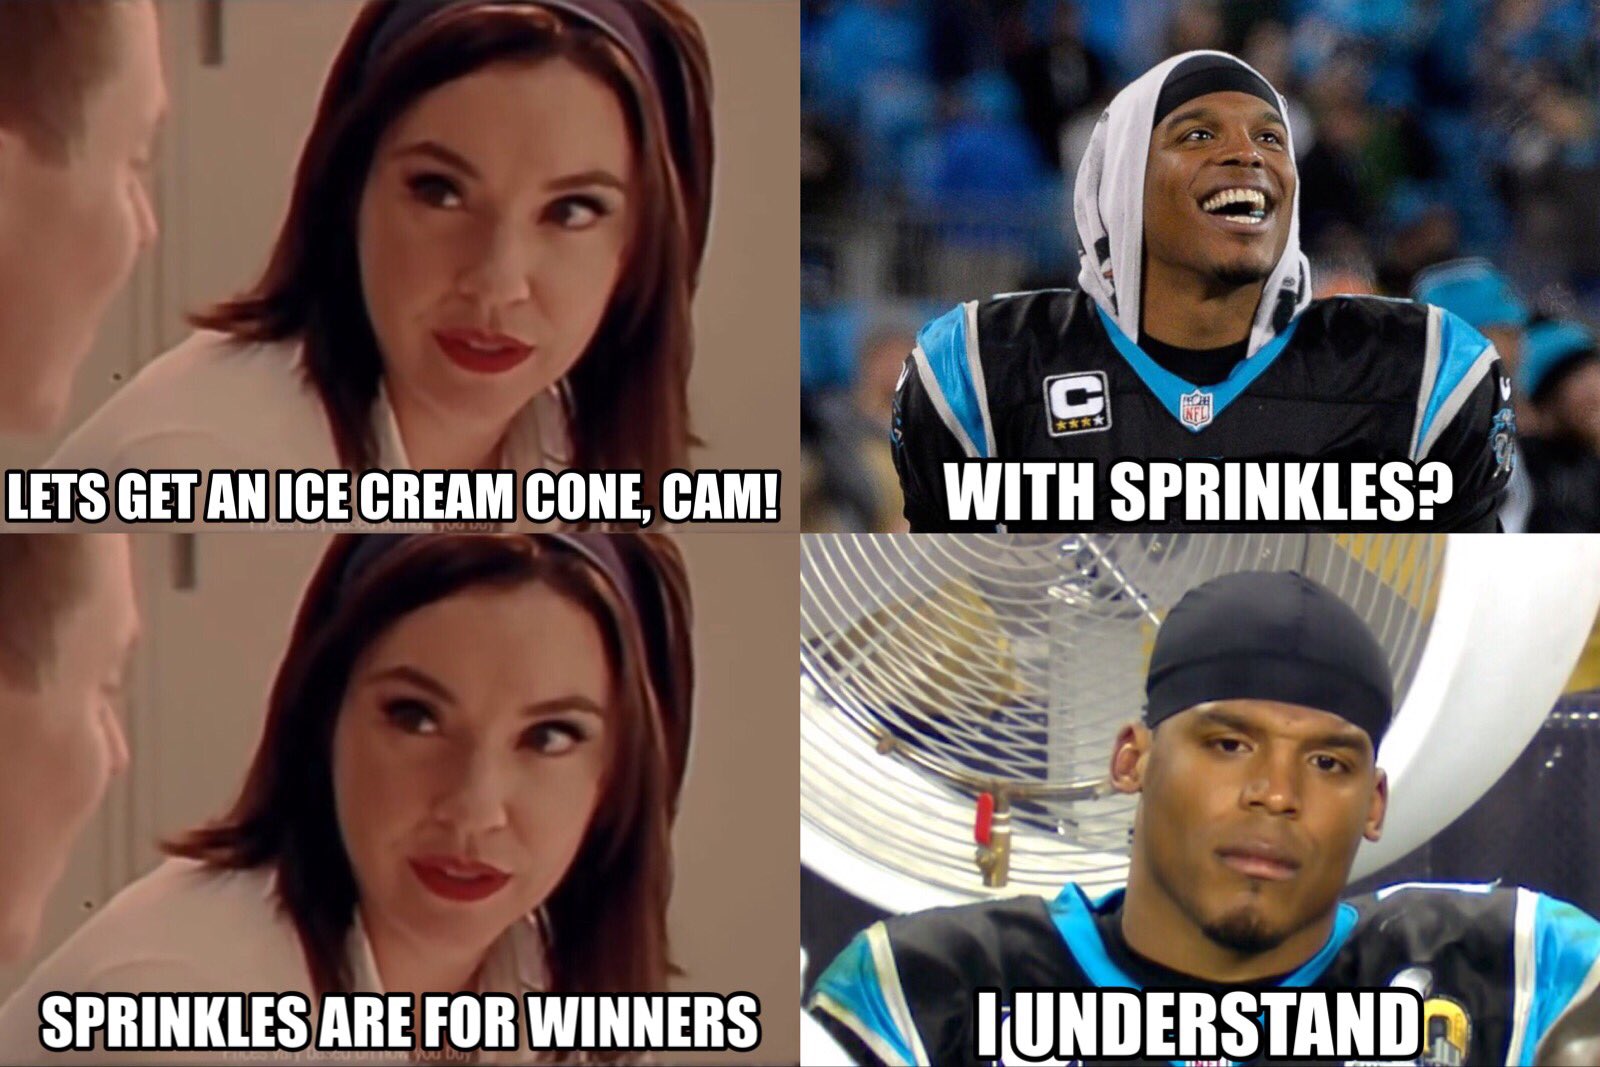 NFL Memes on Twitter.